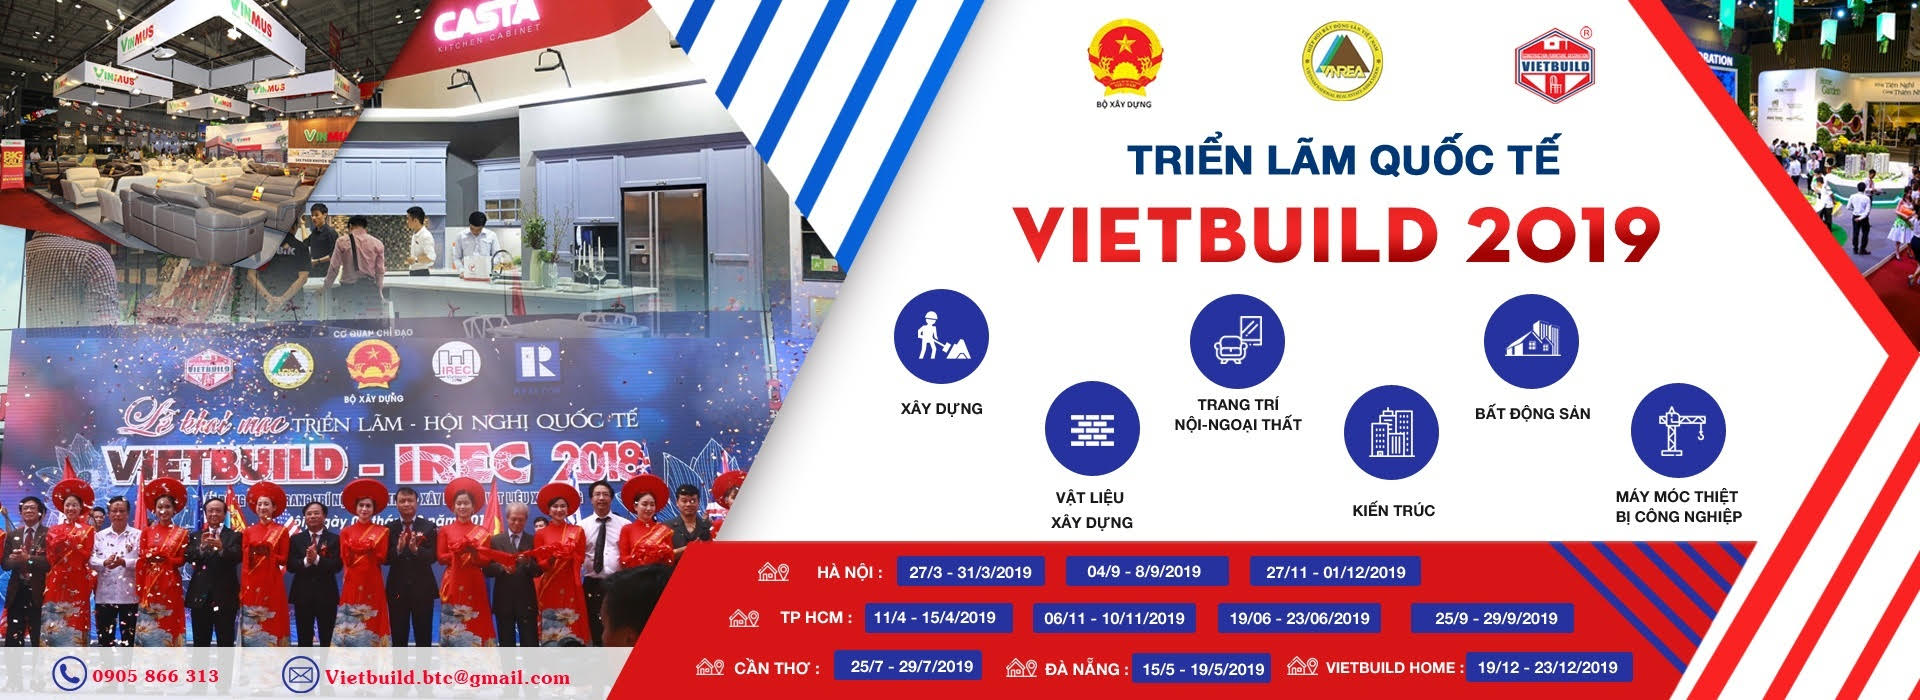 Triển lãm Vietbuild 2019 tại Hồ Chí Minh sẽ có những gì?